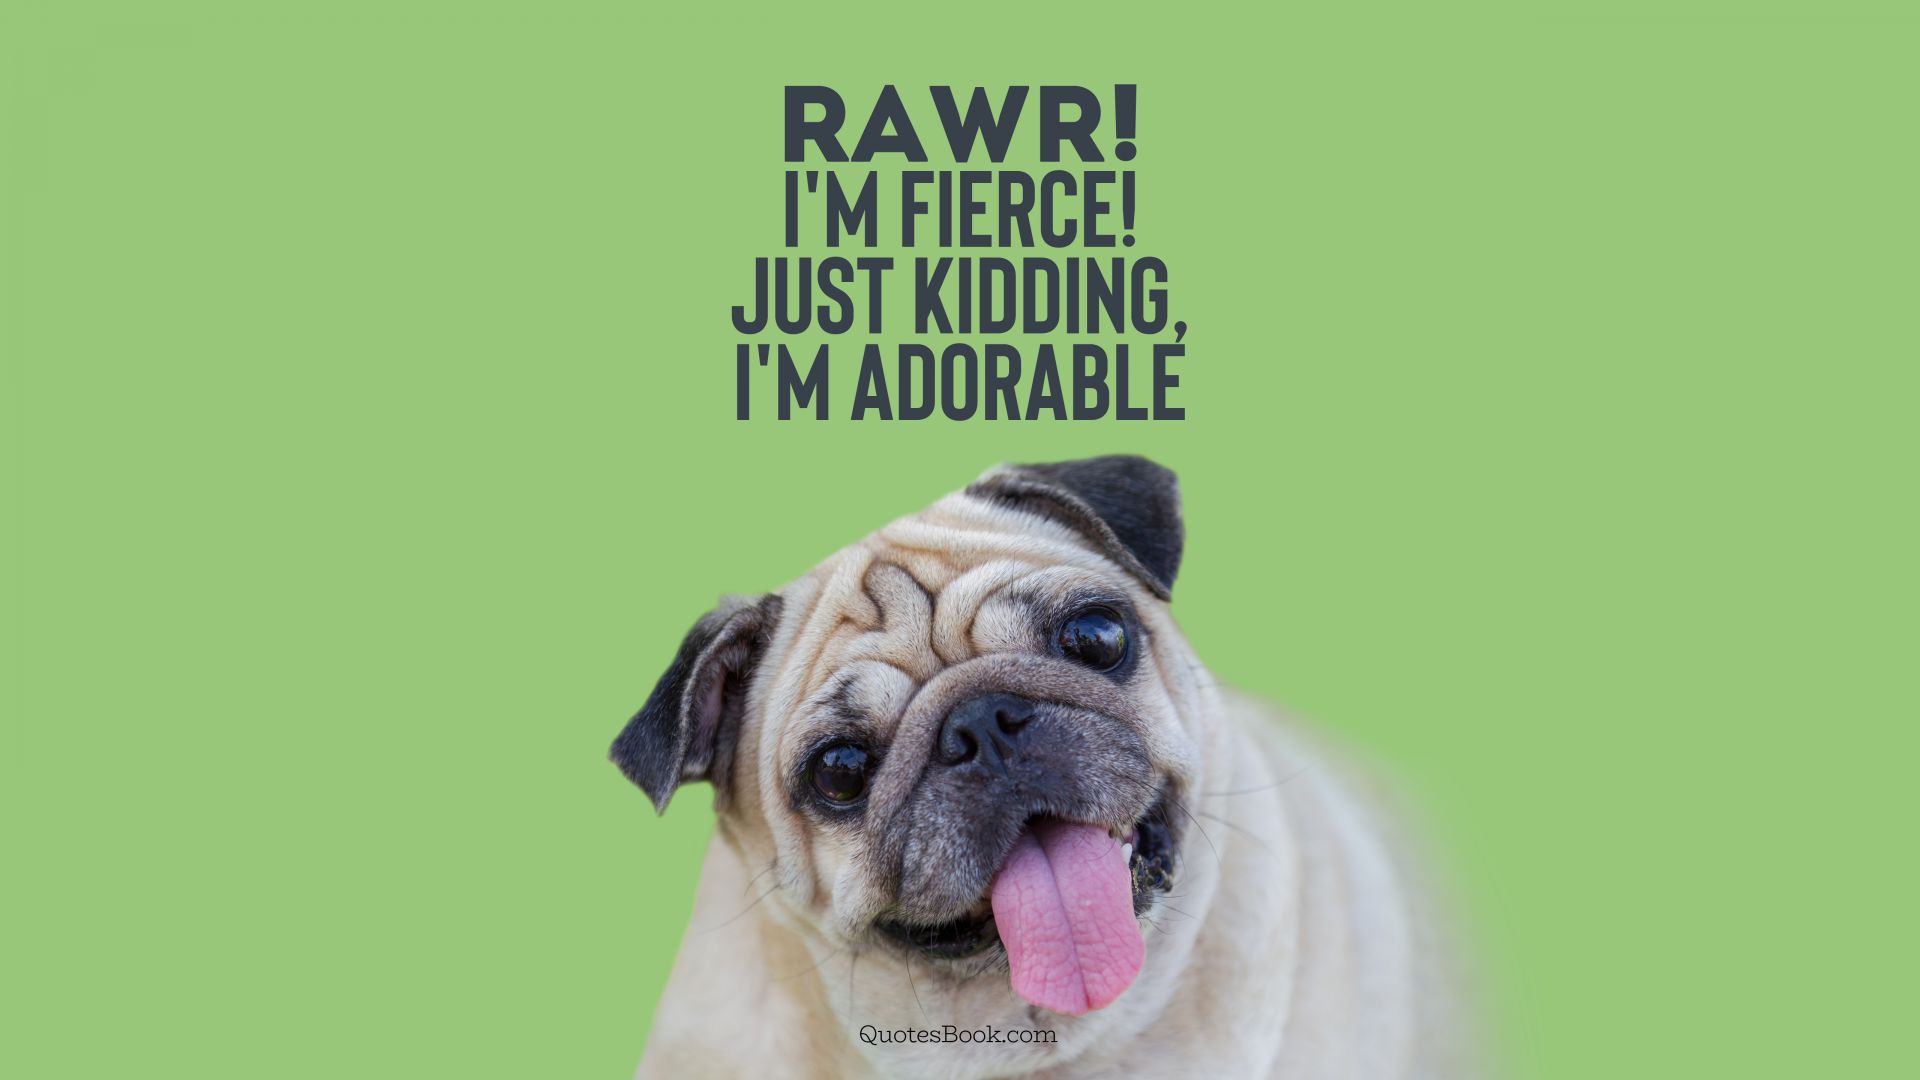 Rawr! I'm fierce! Just kidding, I'm adorable